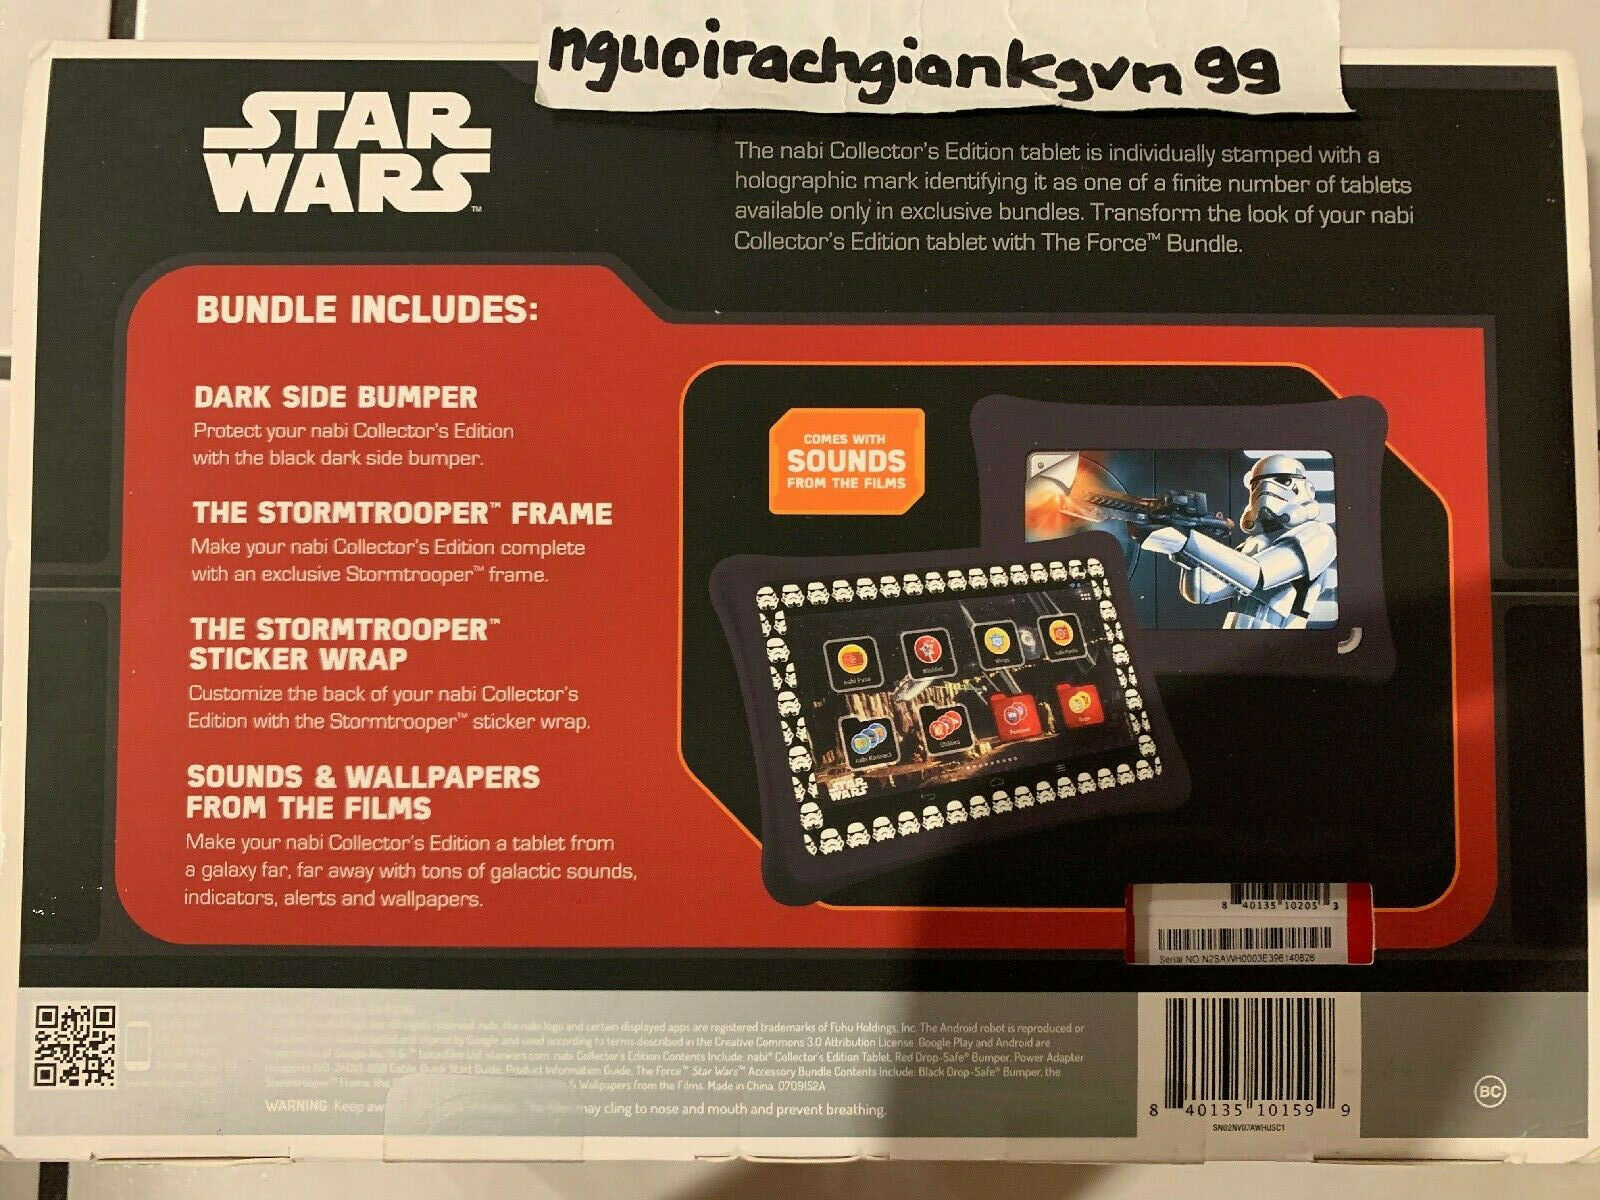 Star Wars - HD Wallpaper 